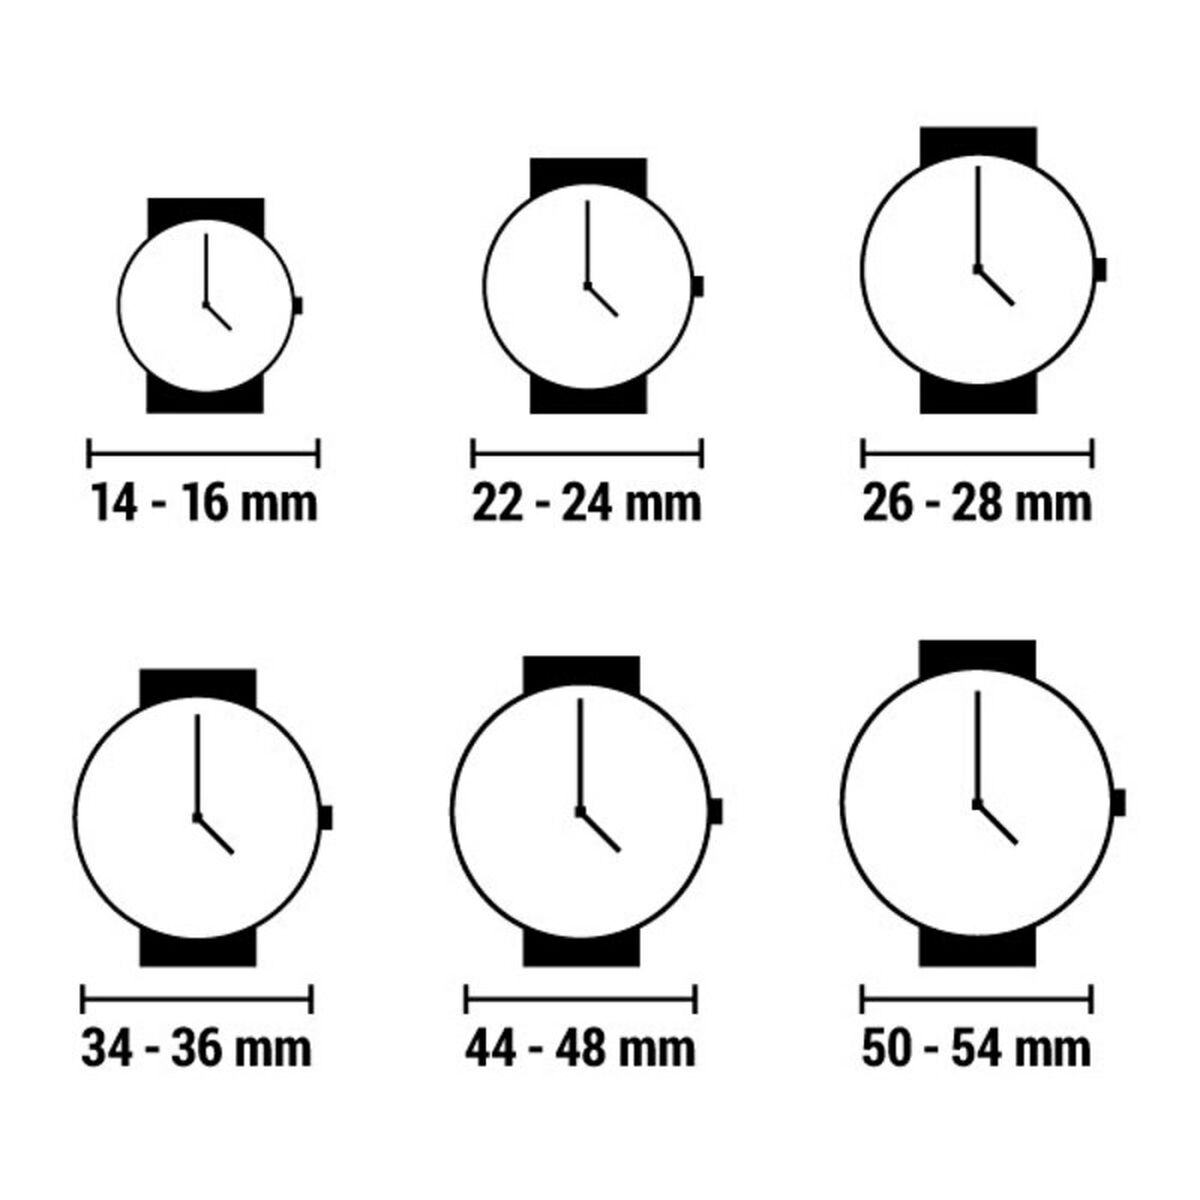 Horloge Heren Bogey BSFS002GRBK (Ø 44 mm)